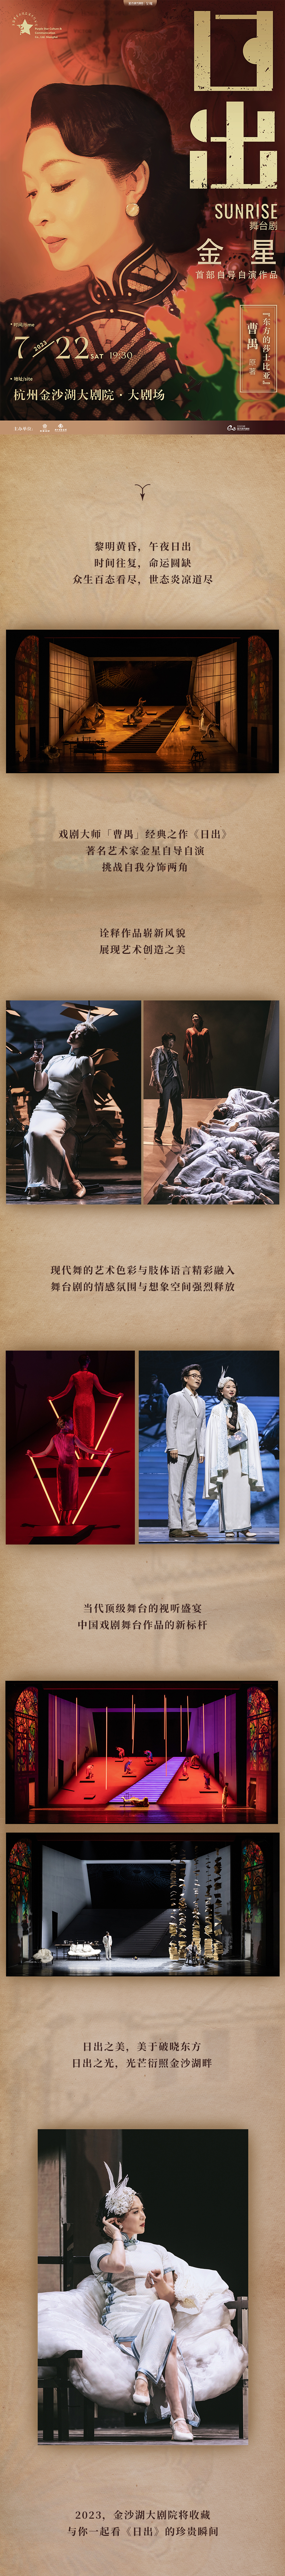 杭州金星首部自导自演作品—舞台剧《日出》